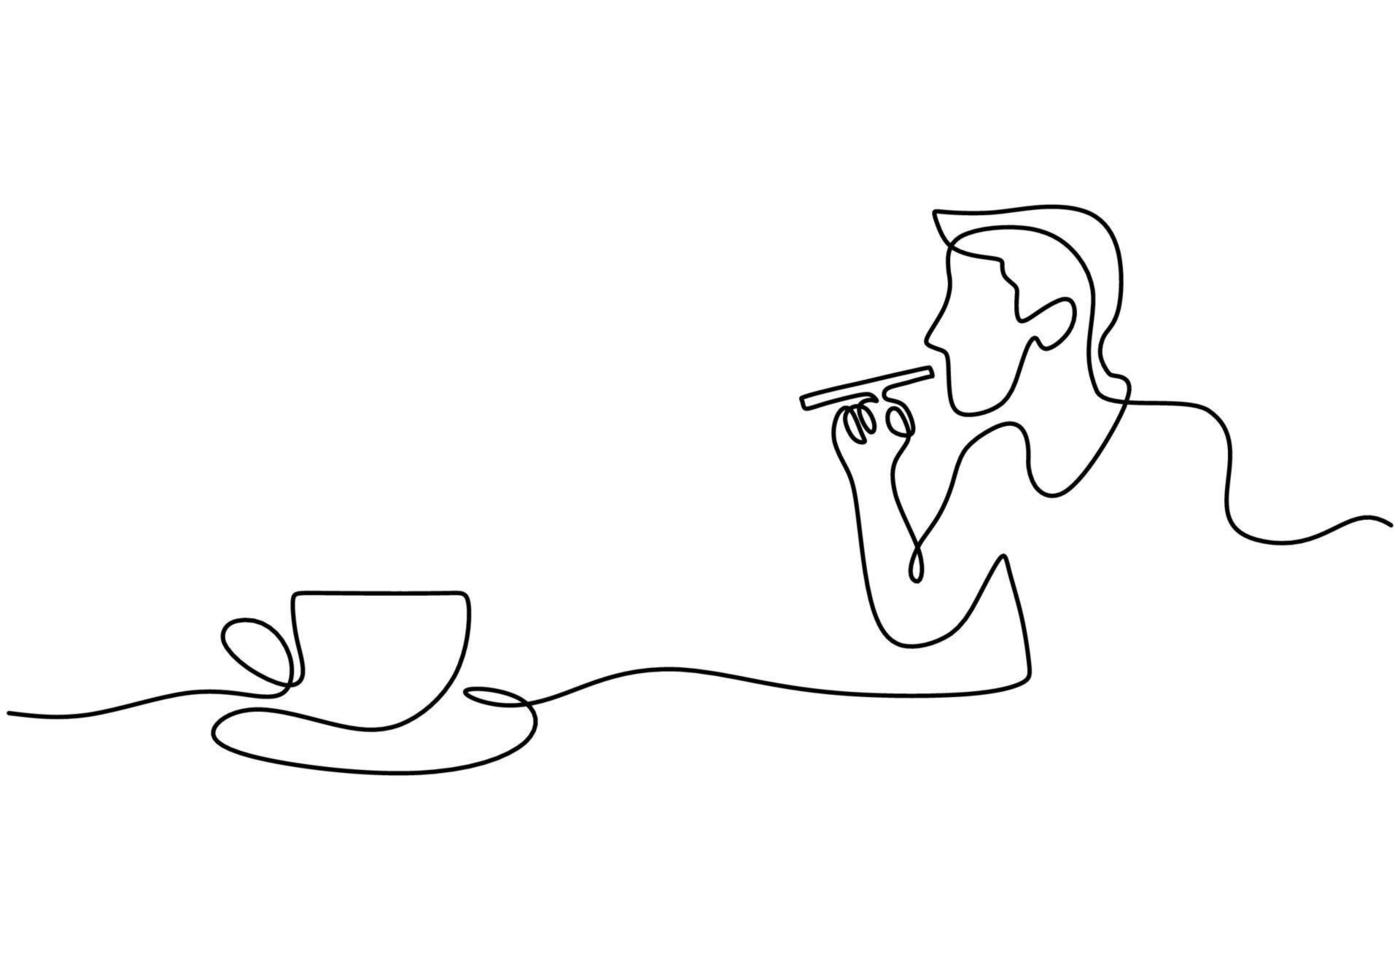 une seule ligne continue d'intestin fumant dessiné à la main buvant du café vecteur